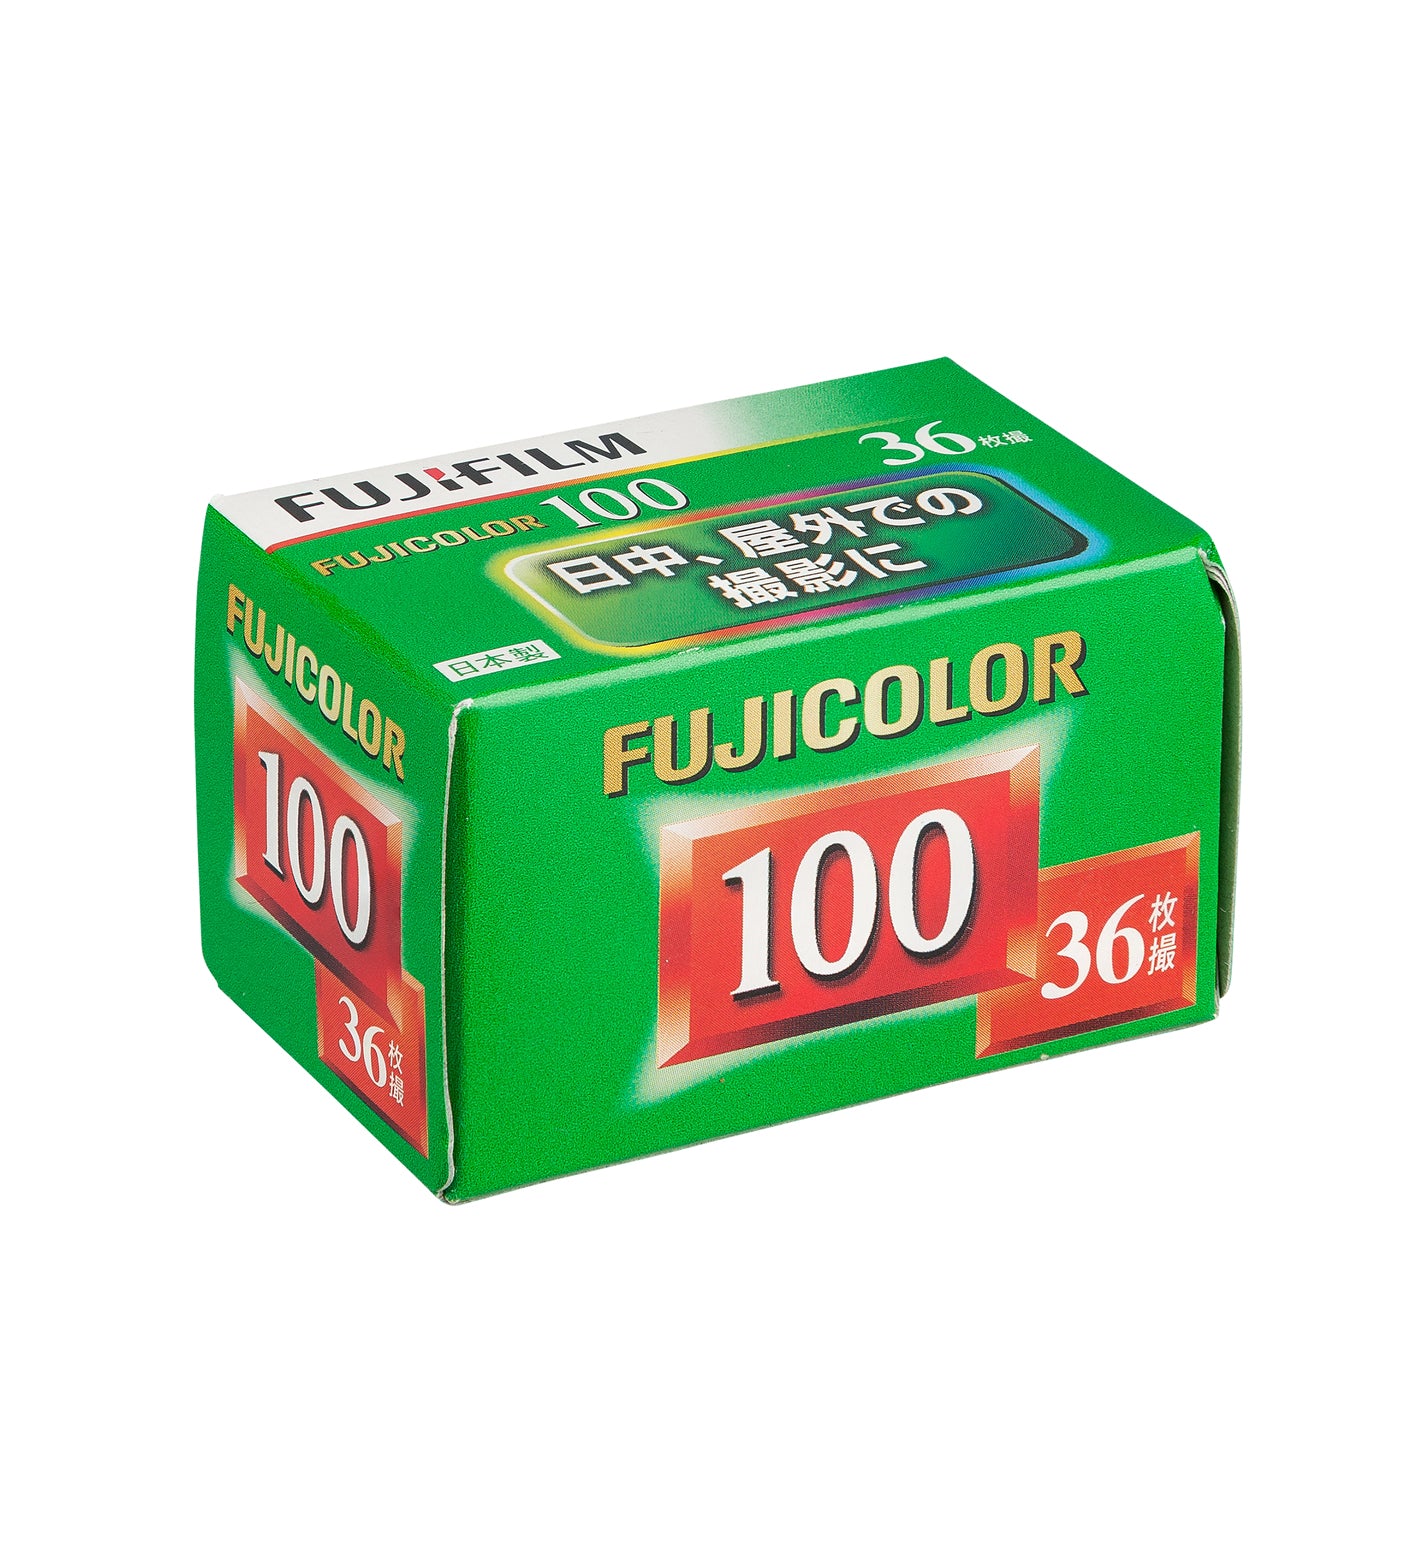 Fujifilm Fujicolor 100 35mm Film 36 Exposures (£11.99 incl VAT)